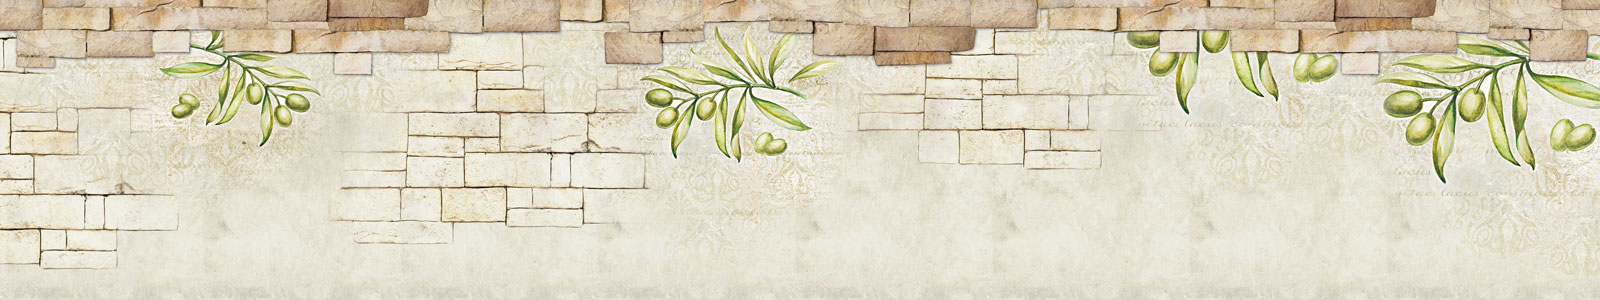 №4343 - Стена с рисунками оливок для стиля прованс